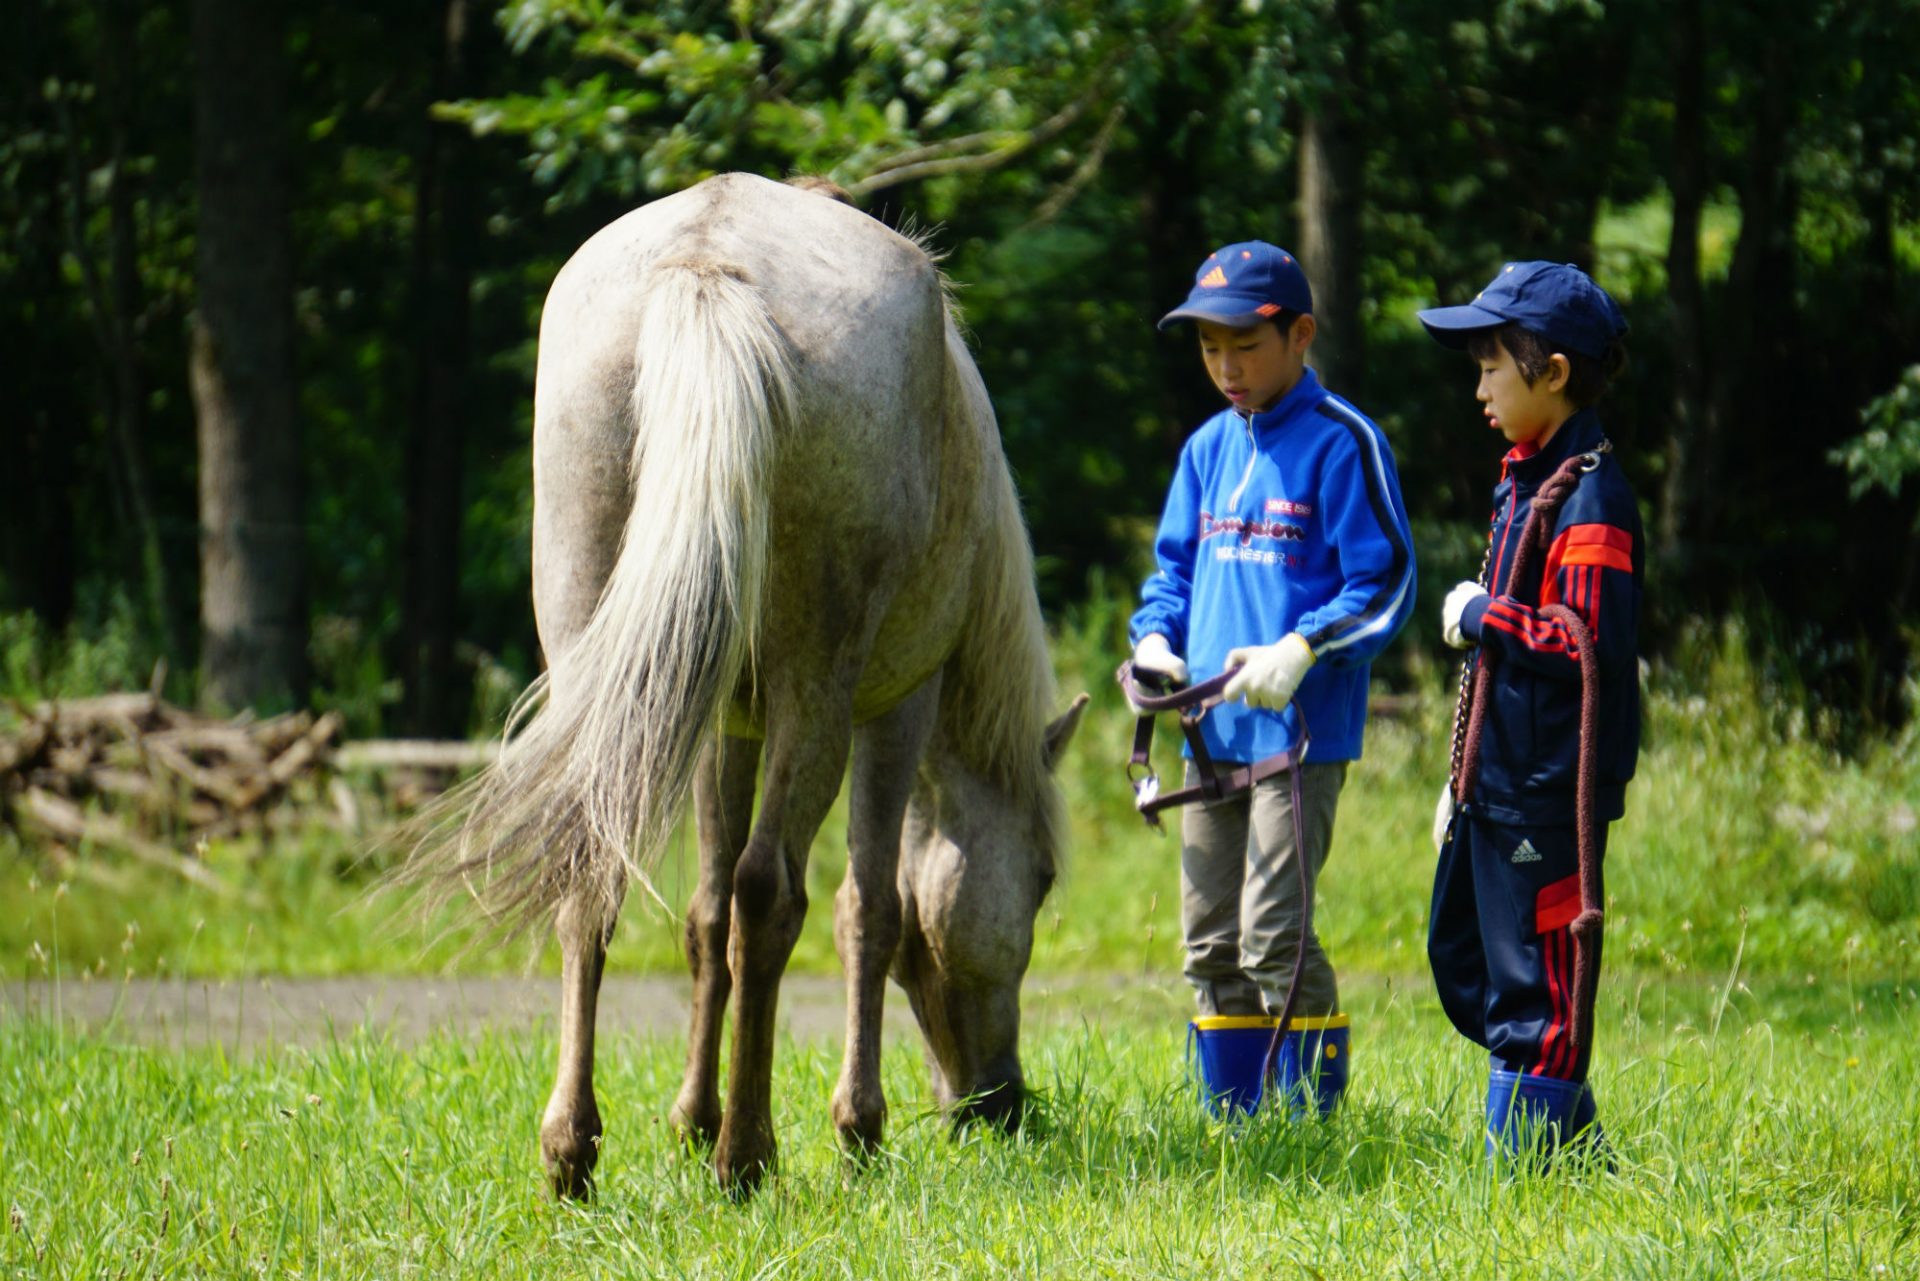 小中学生と対象とした「牧場暮らしキャンプ」を北海道で実施